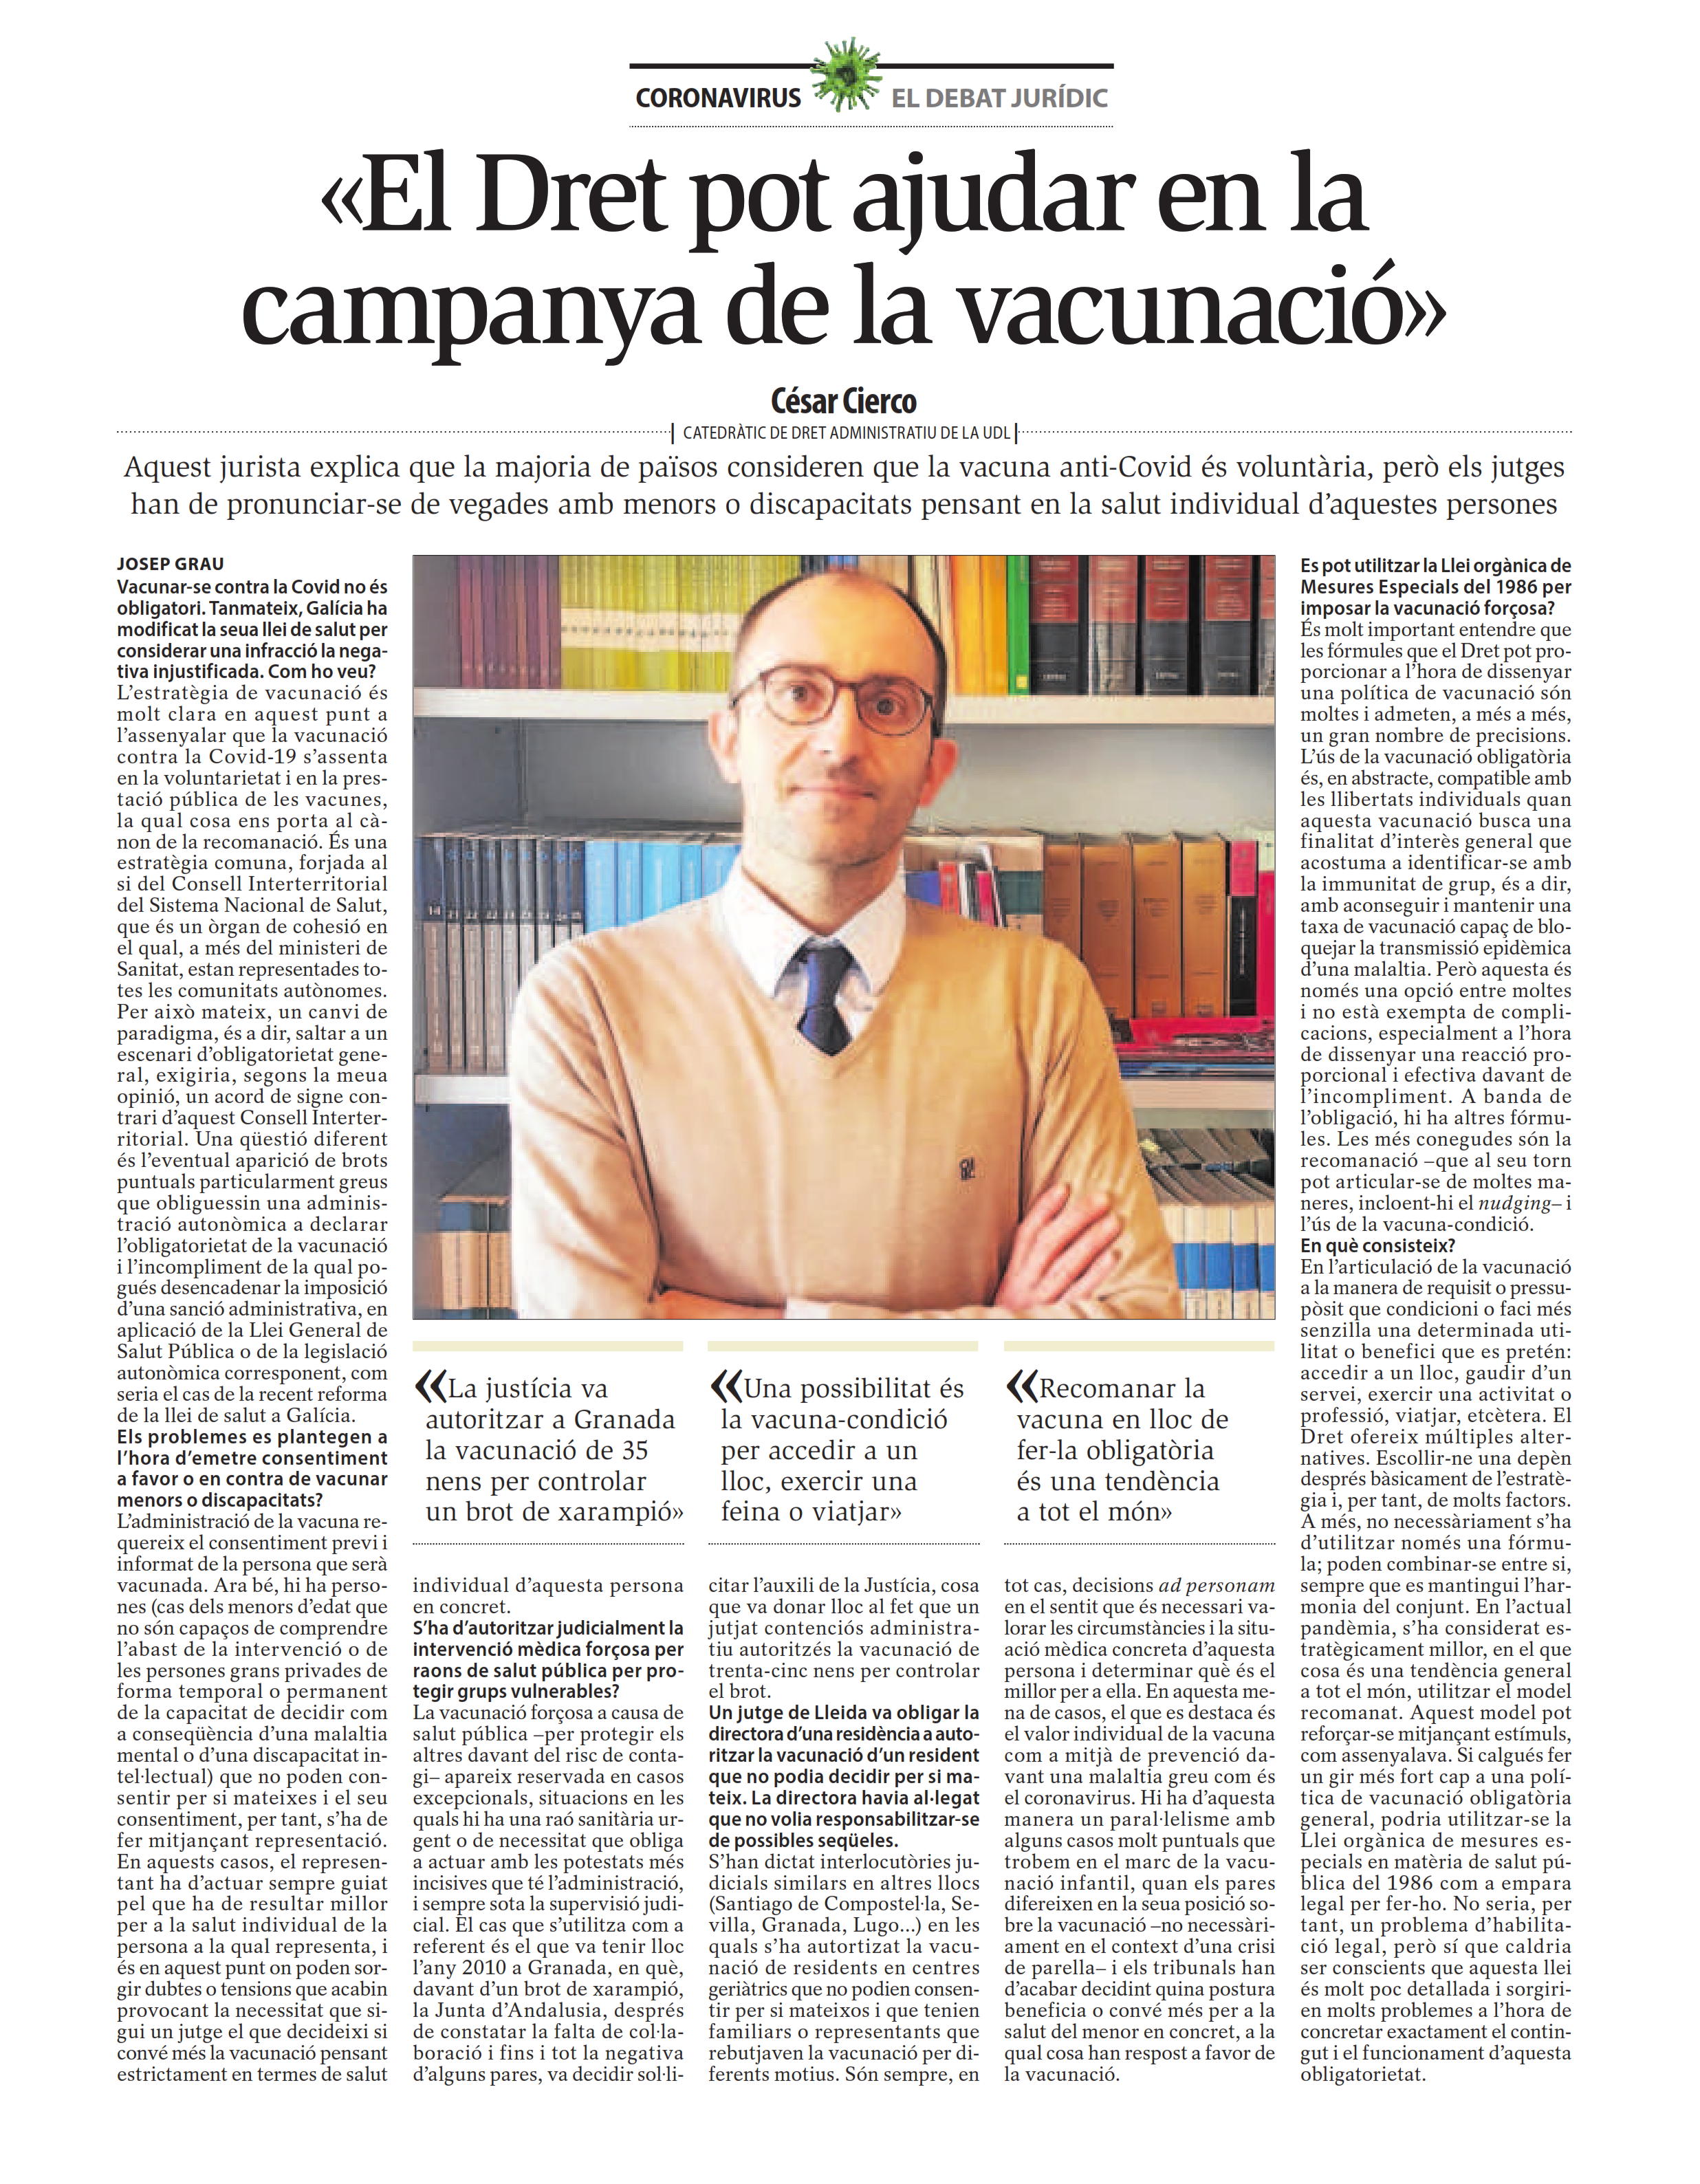 CIERCO SEIRA, César - El Dret pot ajudar en la campanya de la vacunació (Segre 28.03.21)